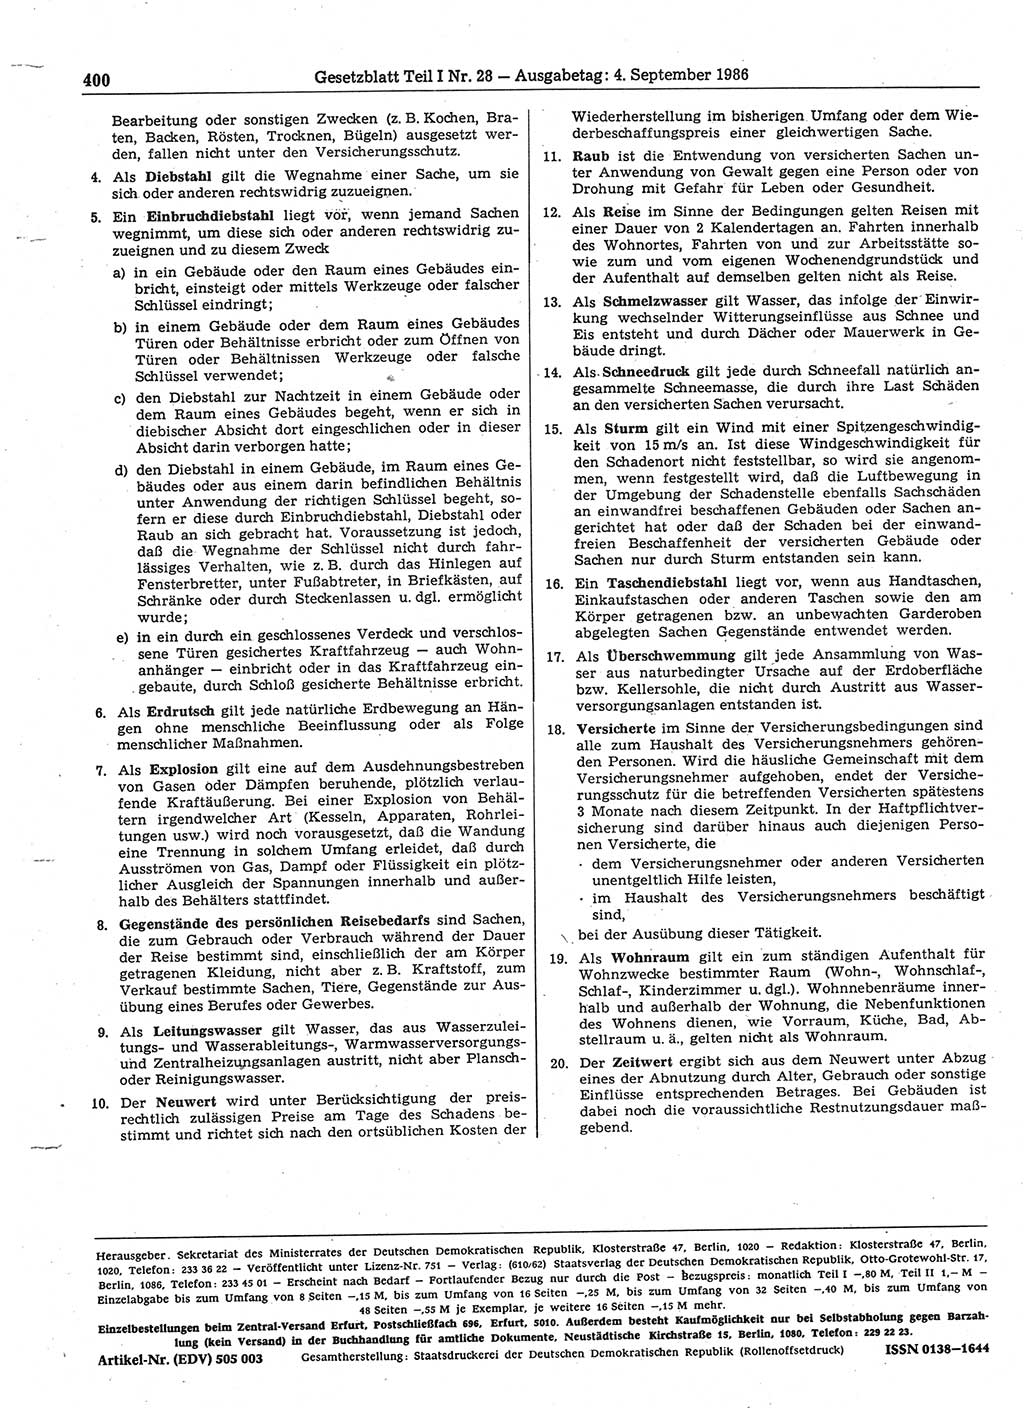 Gesetzblatt (GBl.) der Deutschen Demokratischen Republik (DDR) Teil Ⅰ 1986, Seite 400 (GBl. DDR Ⅰ 1986, S. 400)